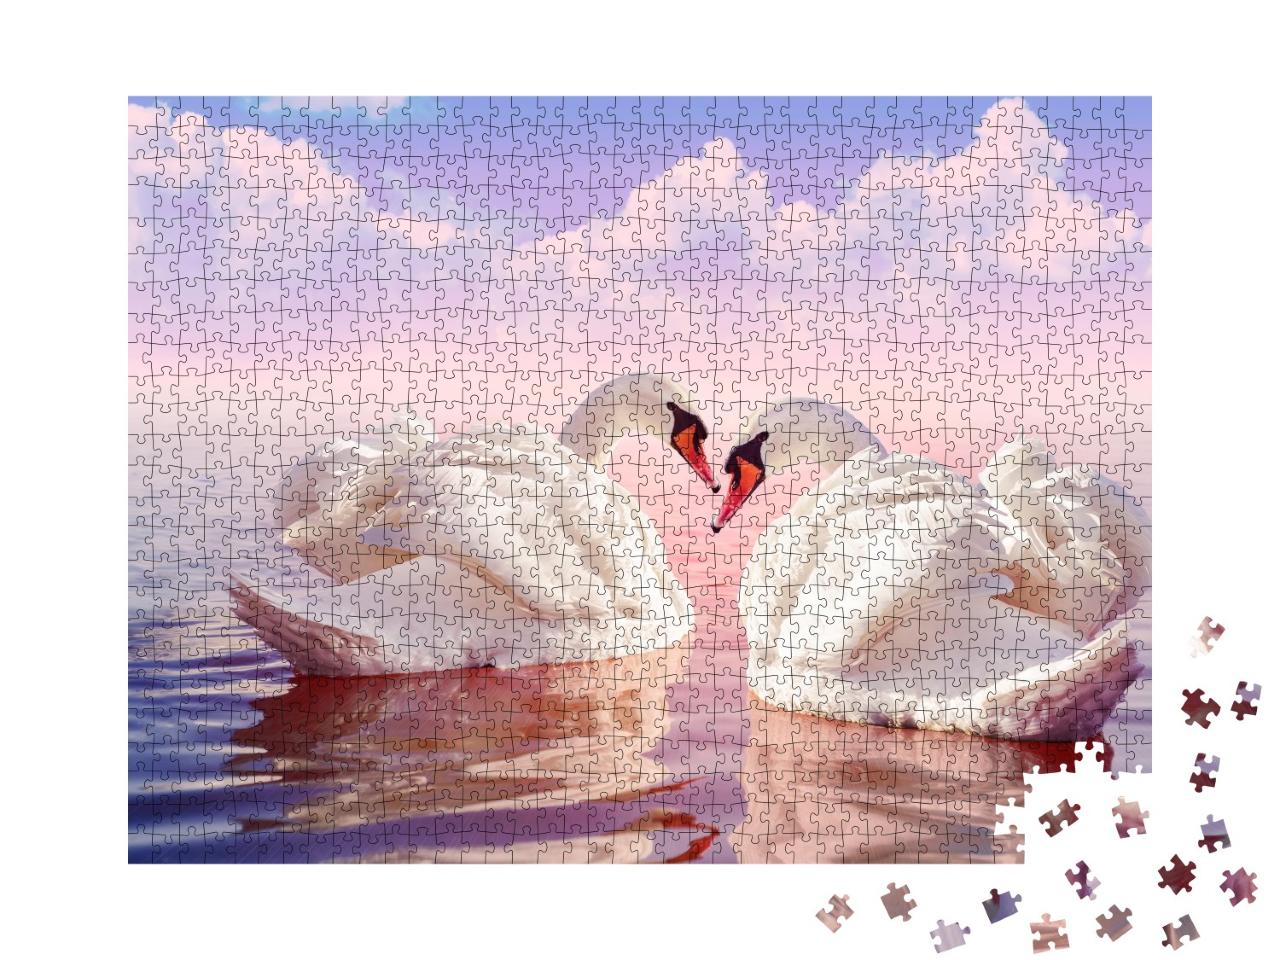 Puzzle de 1000 pièces « Deux magnifiques cygnes blancs dans un lever de soleil rose pâle »